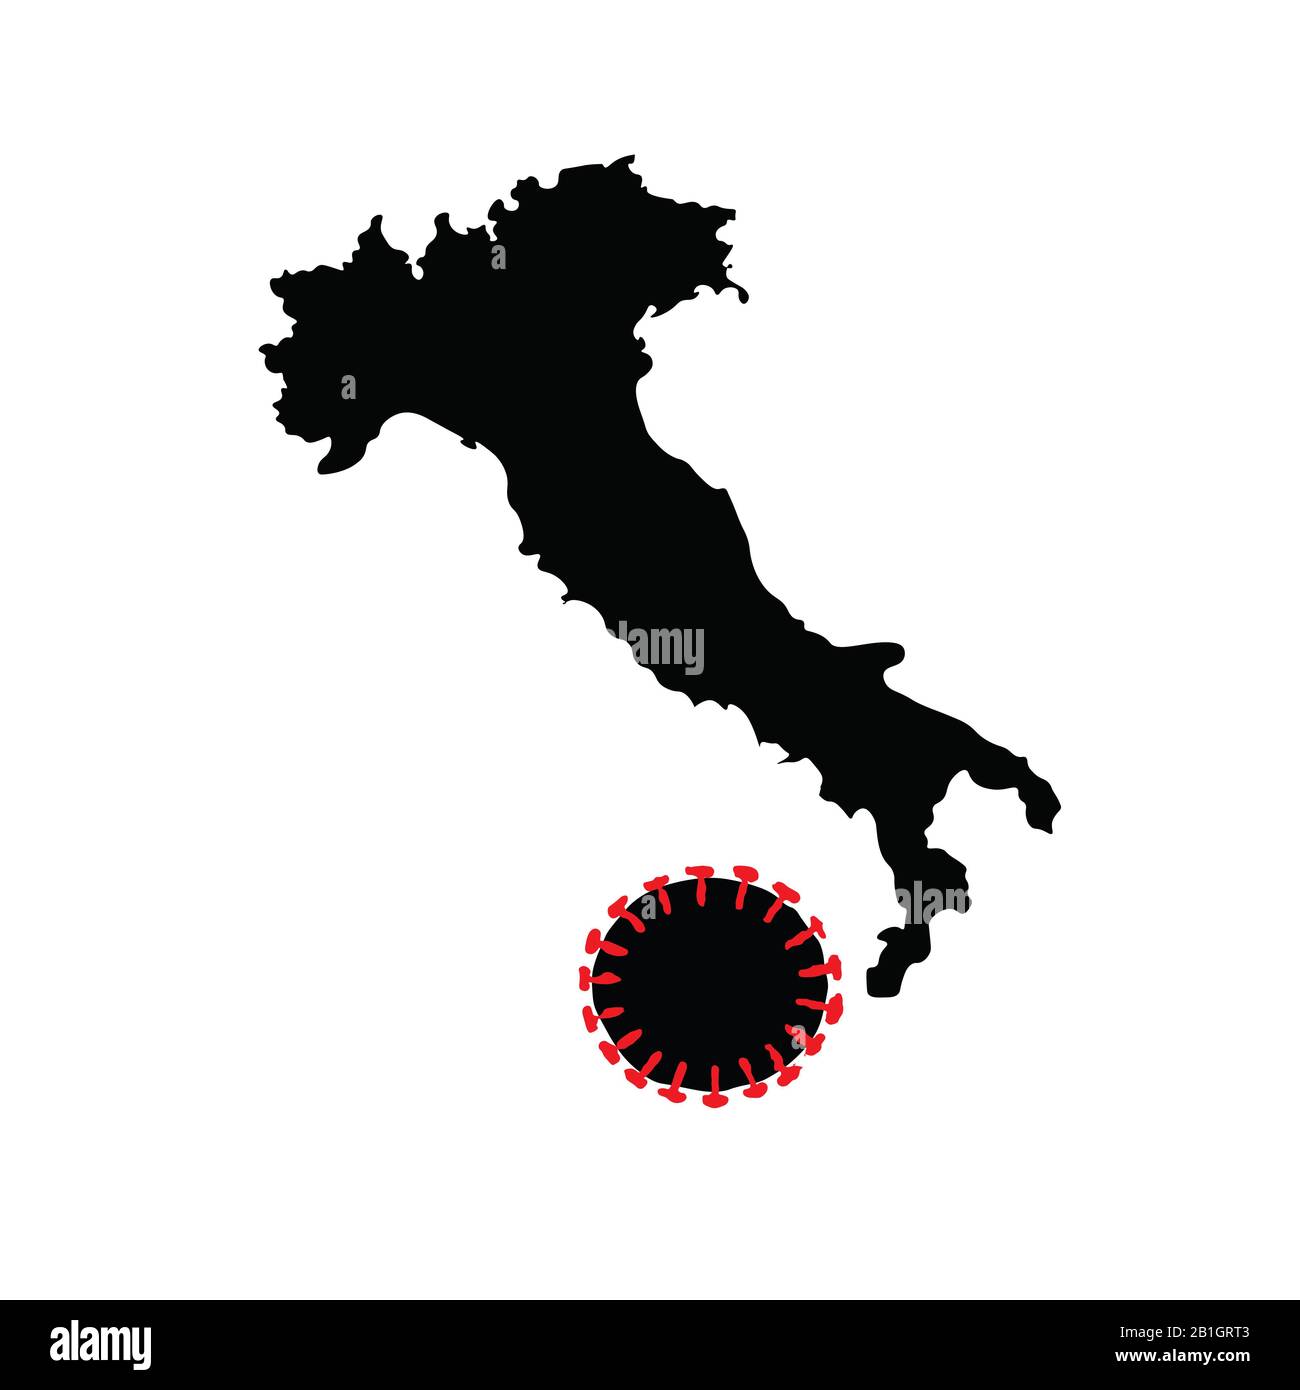 L'Italia combatte Coronavirus. Silhouette of Italy mappa in una forma di scarpa che calcia la palla a forma di virus corona. Illustrazione raster concettuale. Foto Stock